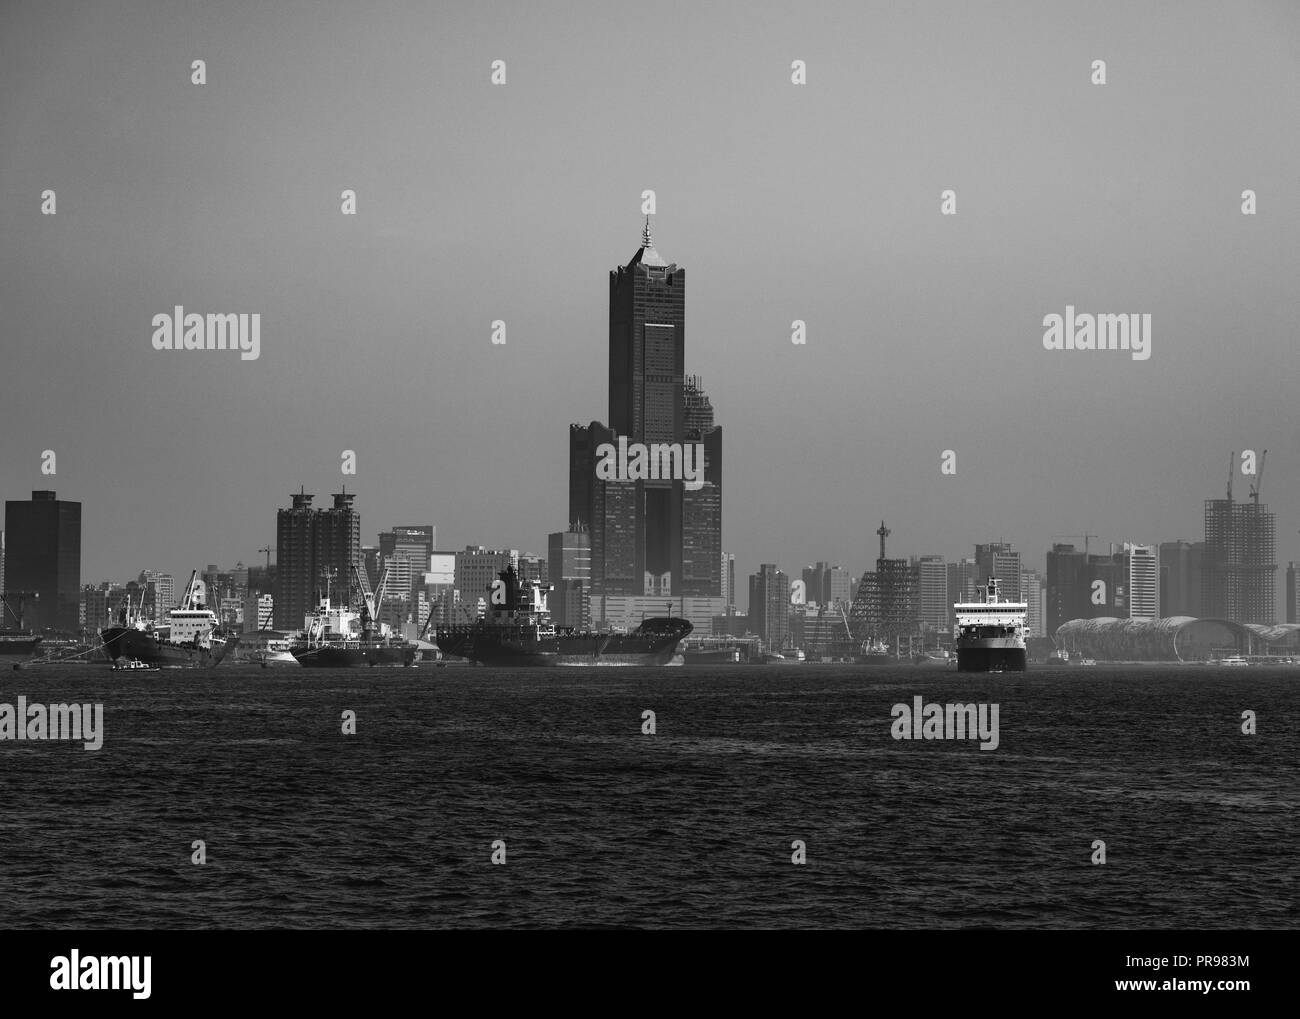 Visualizzazione bianco e nero del porto di Kaohsiung e sullo skyline in background Foto Stock